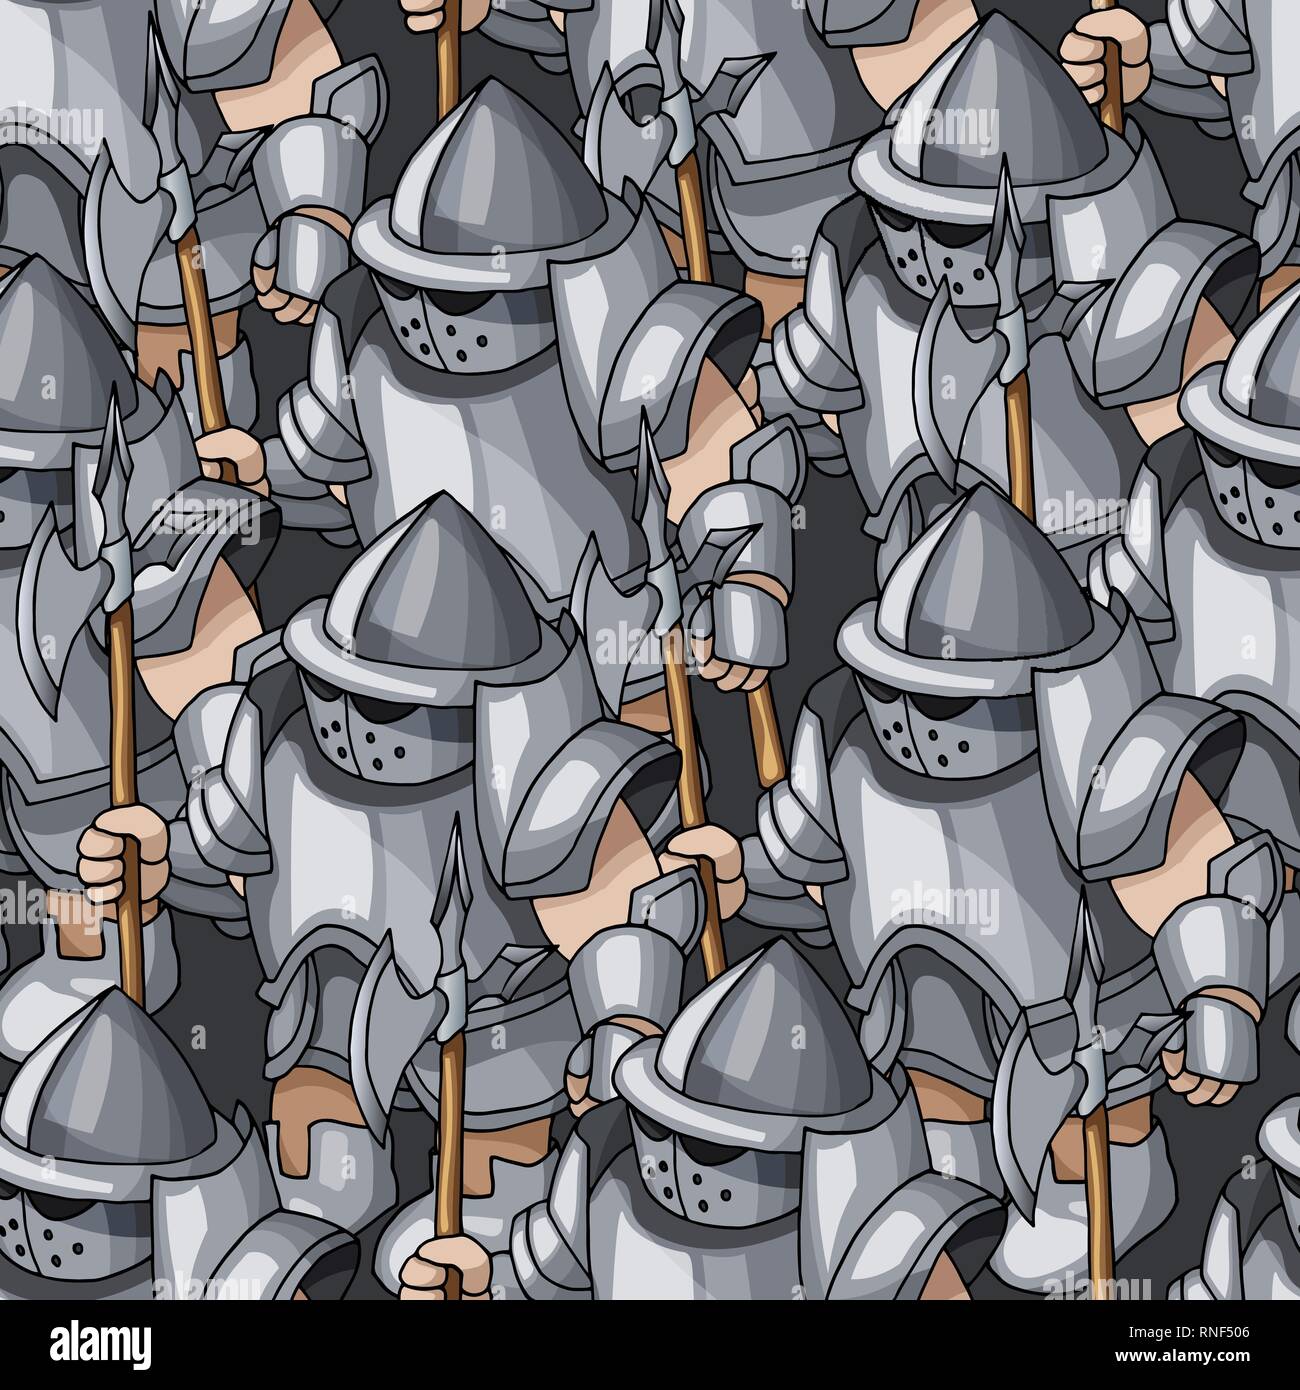 Armored médiéval knights formation hand drawn seamless pattern, armes de guerriers Illustration de Vecteur